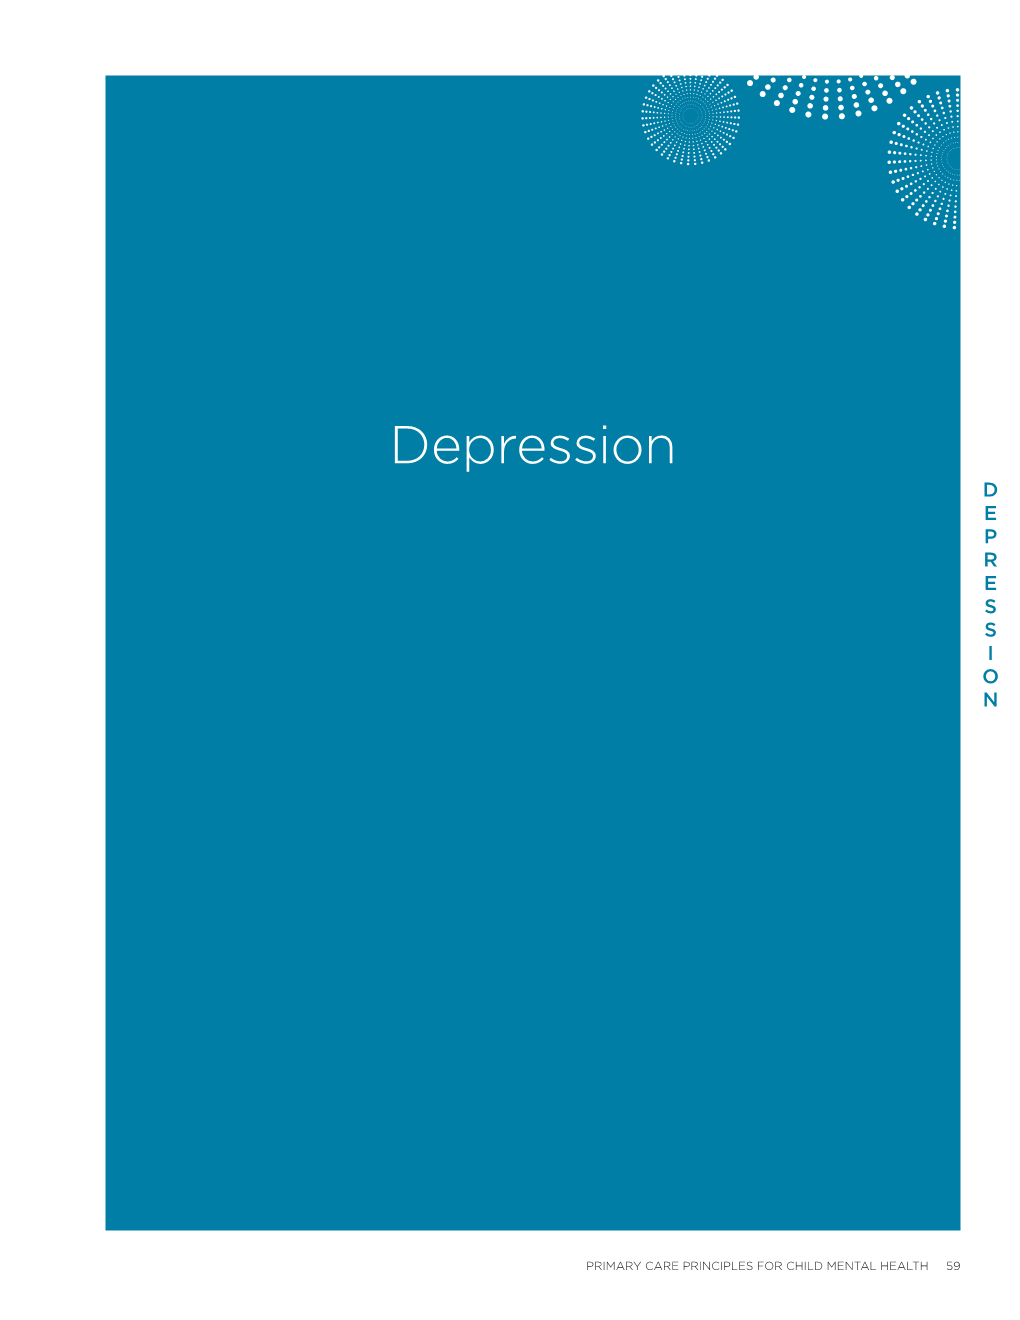 Depression Care Guide